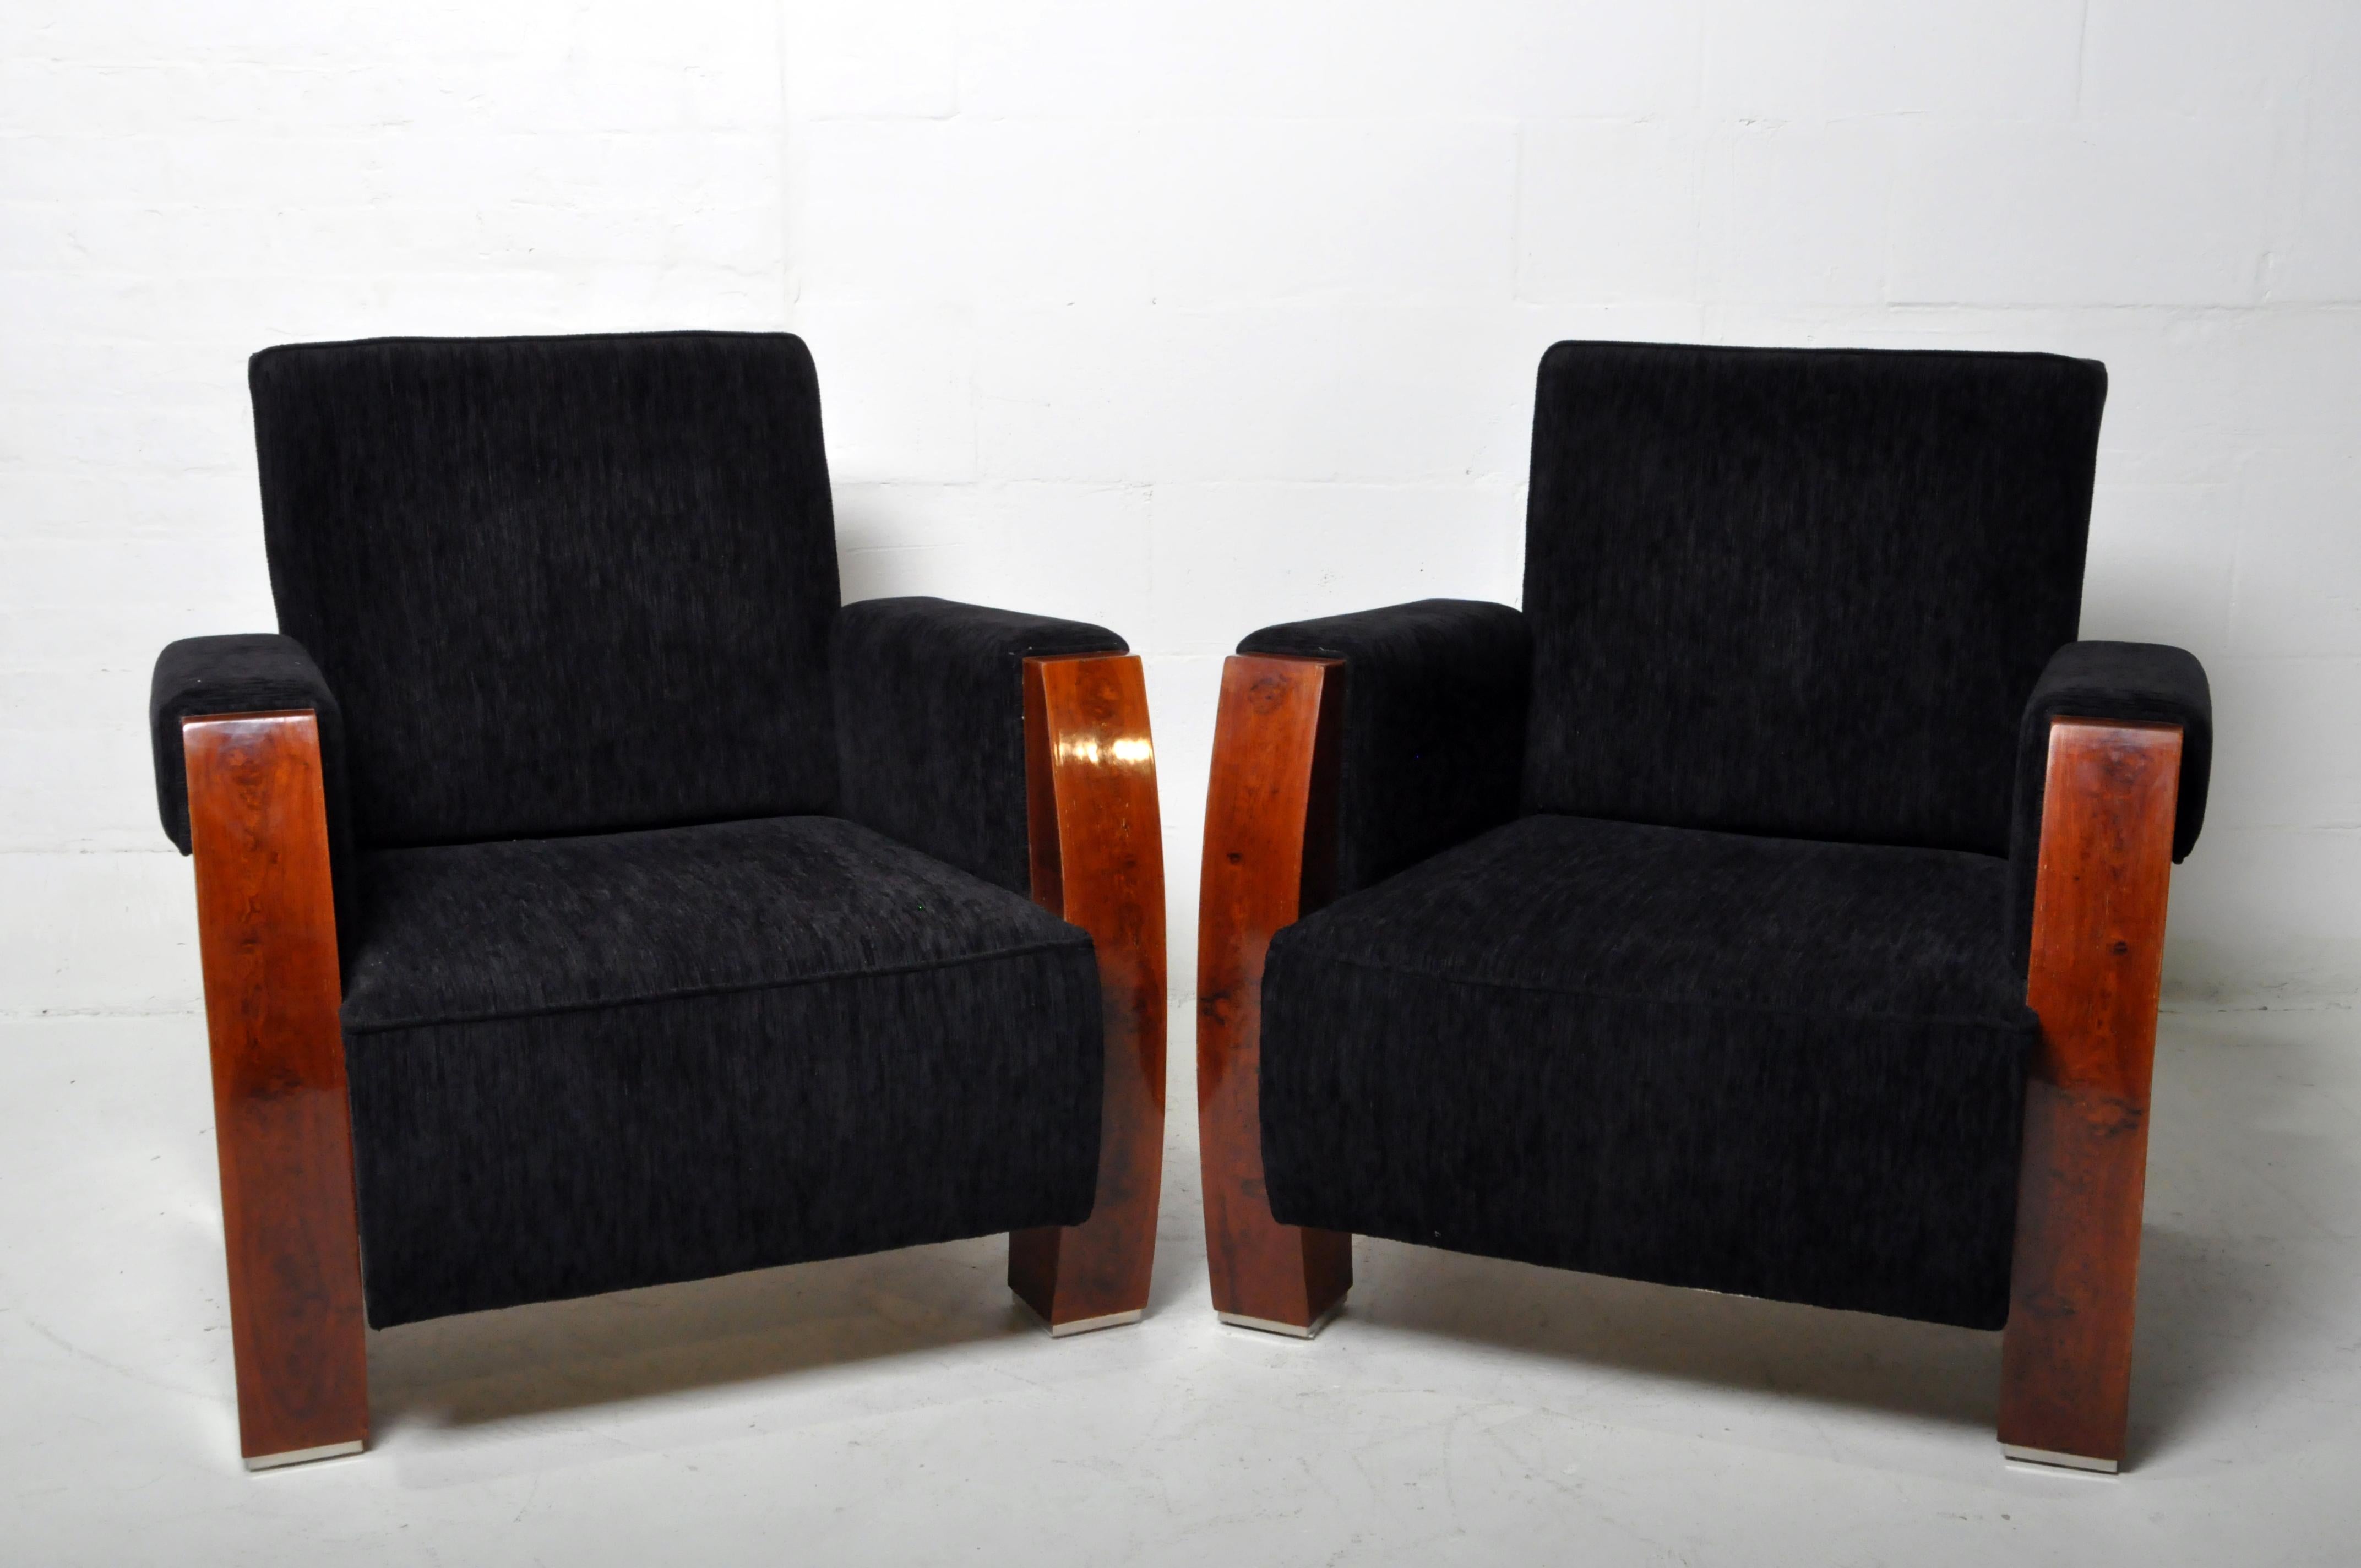 Ein Paar ungarische Sessel im Mid-Century-Stil mit Nussbaumfurnier und Chenille-Polsterung. Ungarische Möbelbauer sind seit der Biedermeierzeit außerordentlich geschickt im Umgang mit Holzfurnieren. Diese stilvollen Stühle stammen aus den 1950er